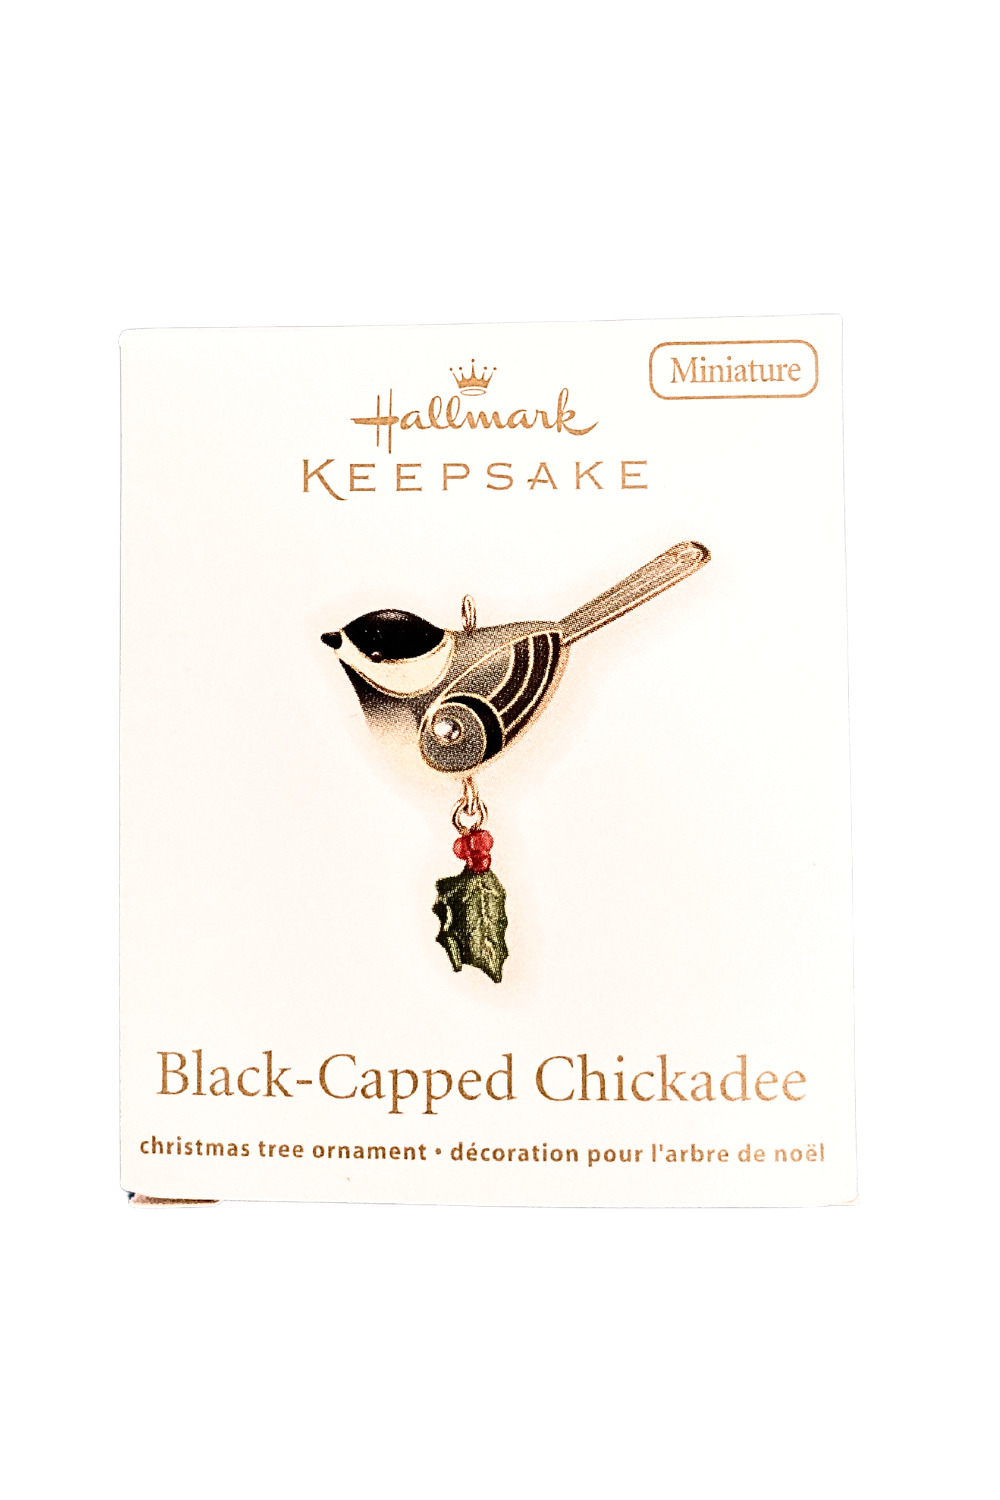 2011 Hallmark Keepsake Ornament Black-Capped Chickadee - NIB - Miniature